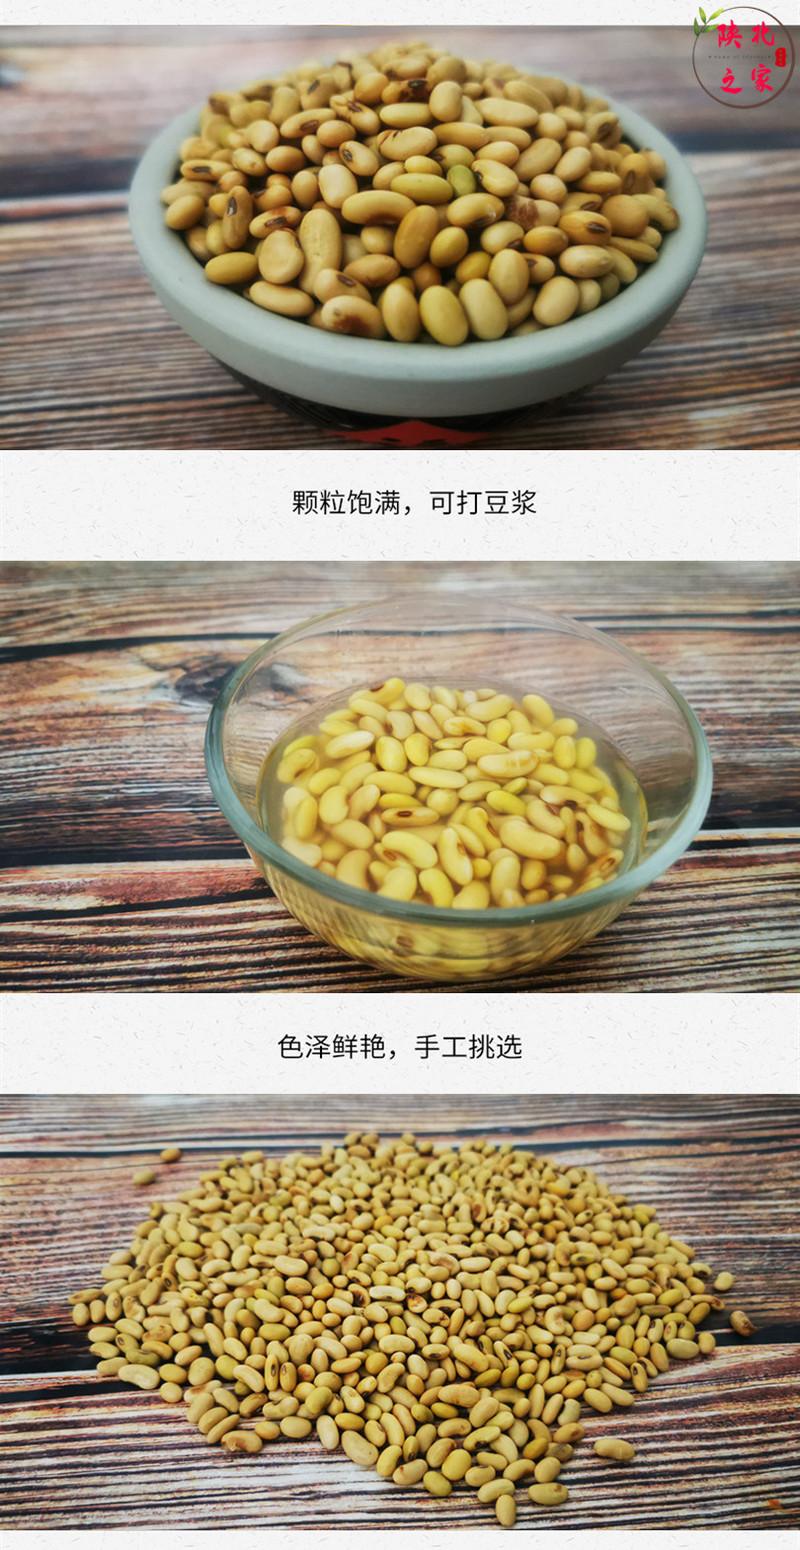 陕北肾形黄豆老品种特产包邮农家自种自产打豆浆专用五谷杂粮